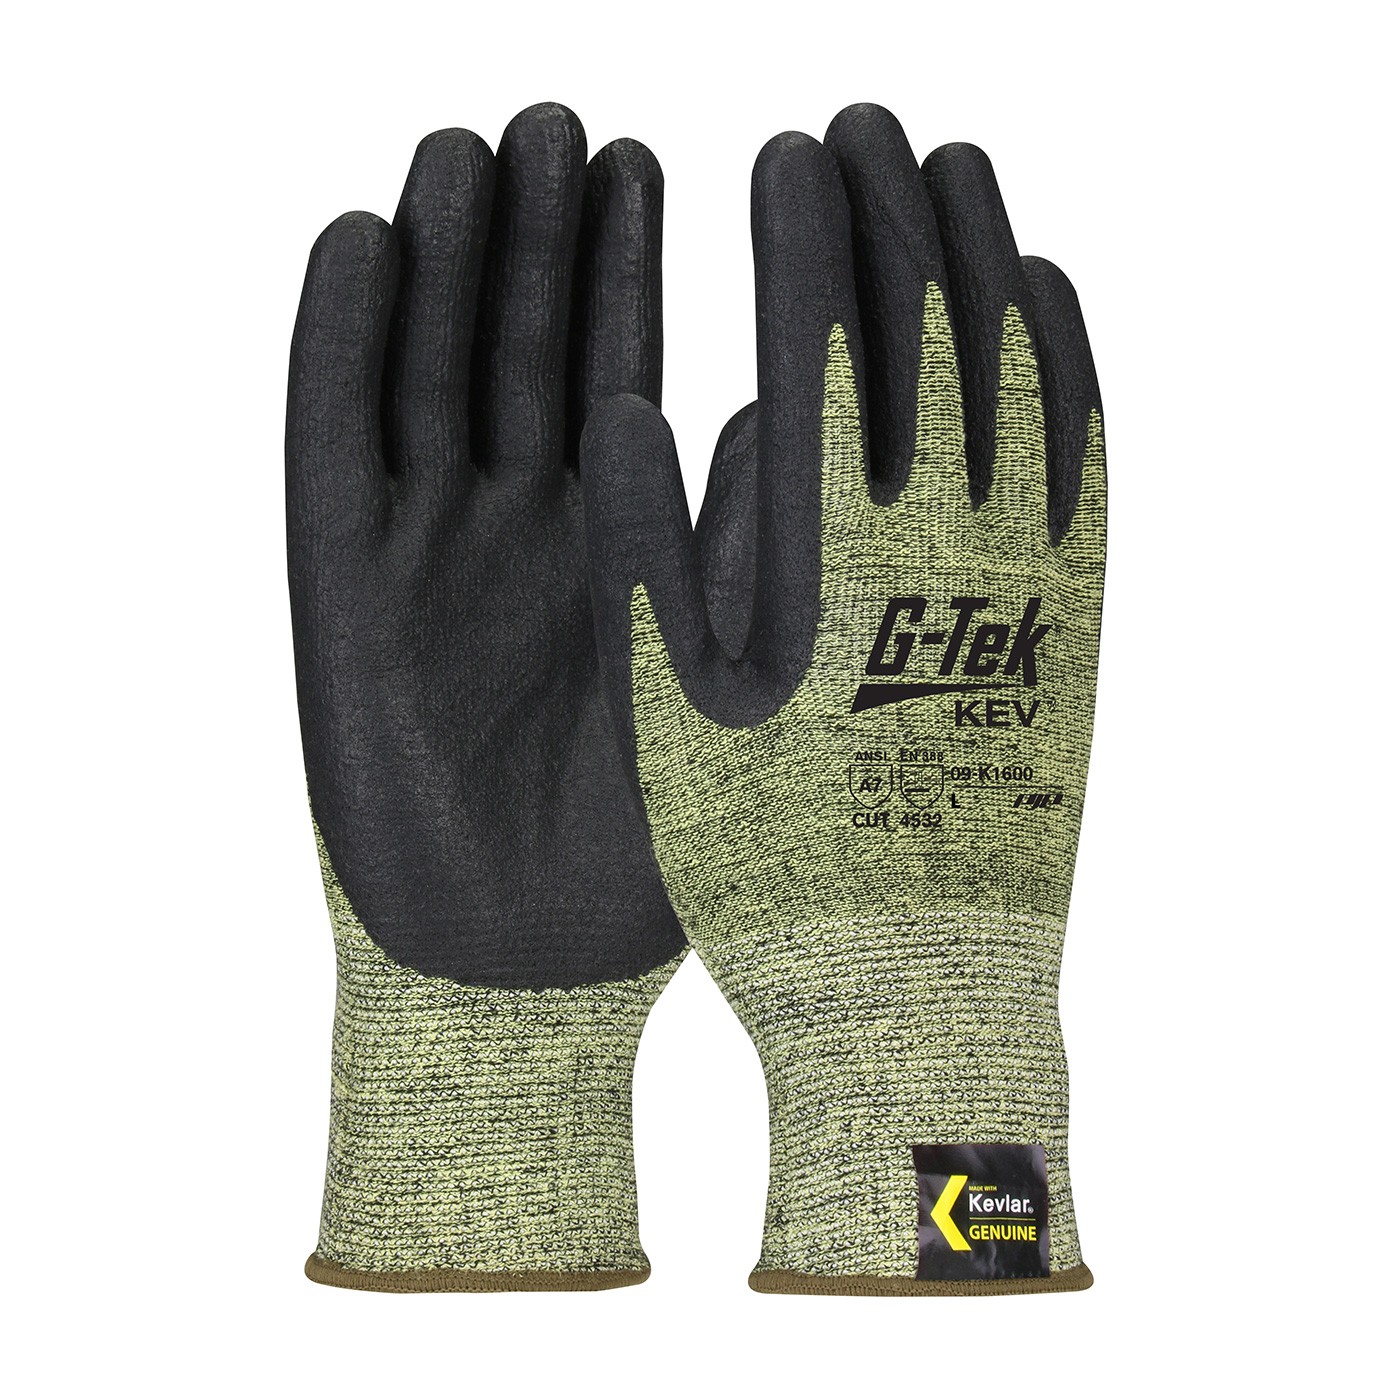 G-Tek® KEV™ Seamless Knit Kevlar® Blended Glove with Nitrile Coated Foam Grip on Palm & Fingers  (#09-K1600)